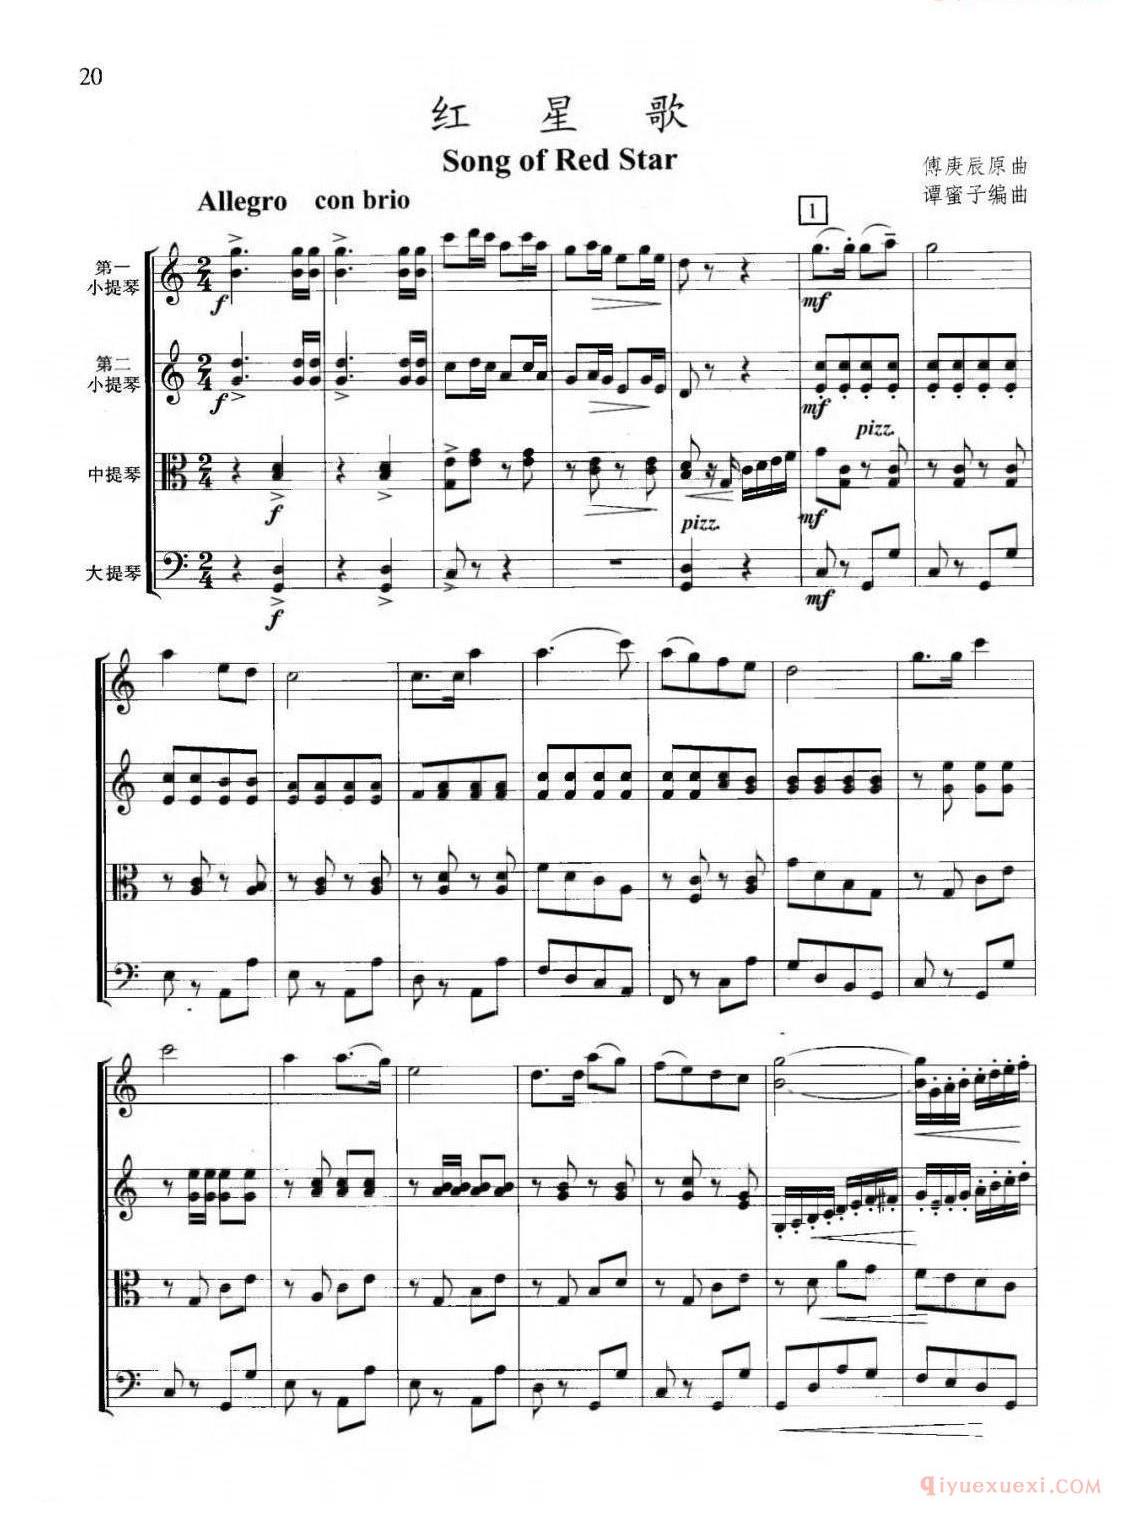 小提琴乐谱[红星歌]弦乐四重奏版 总谱